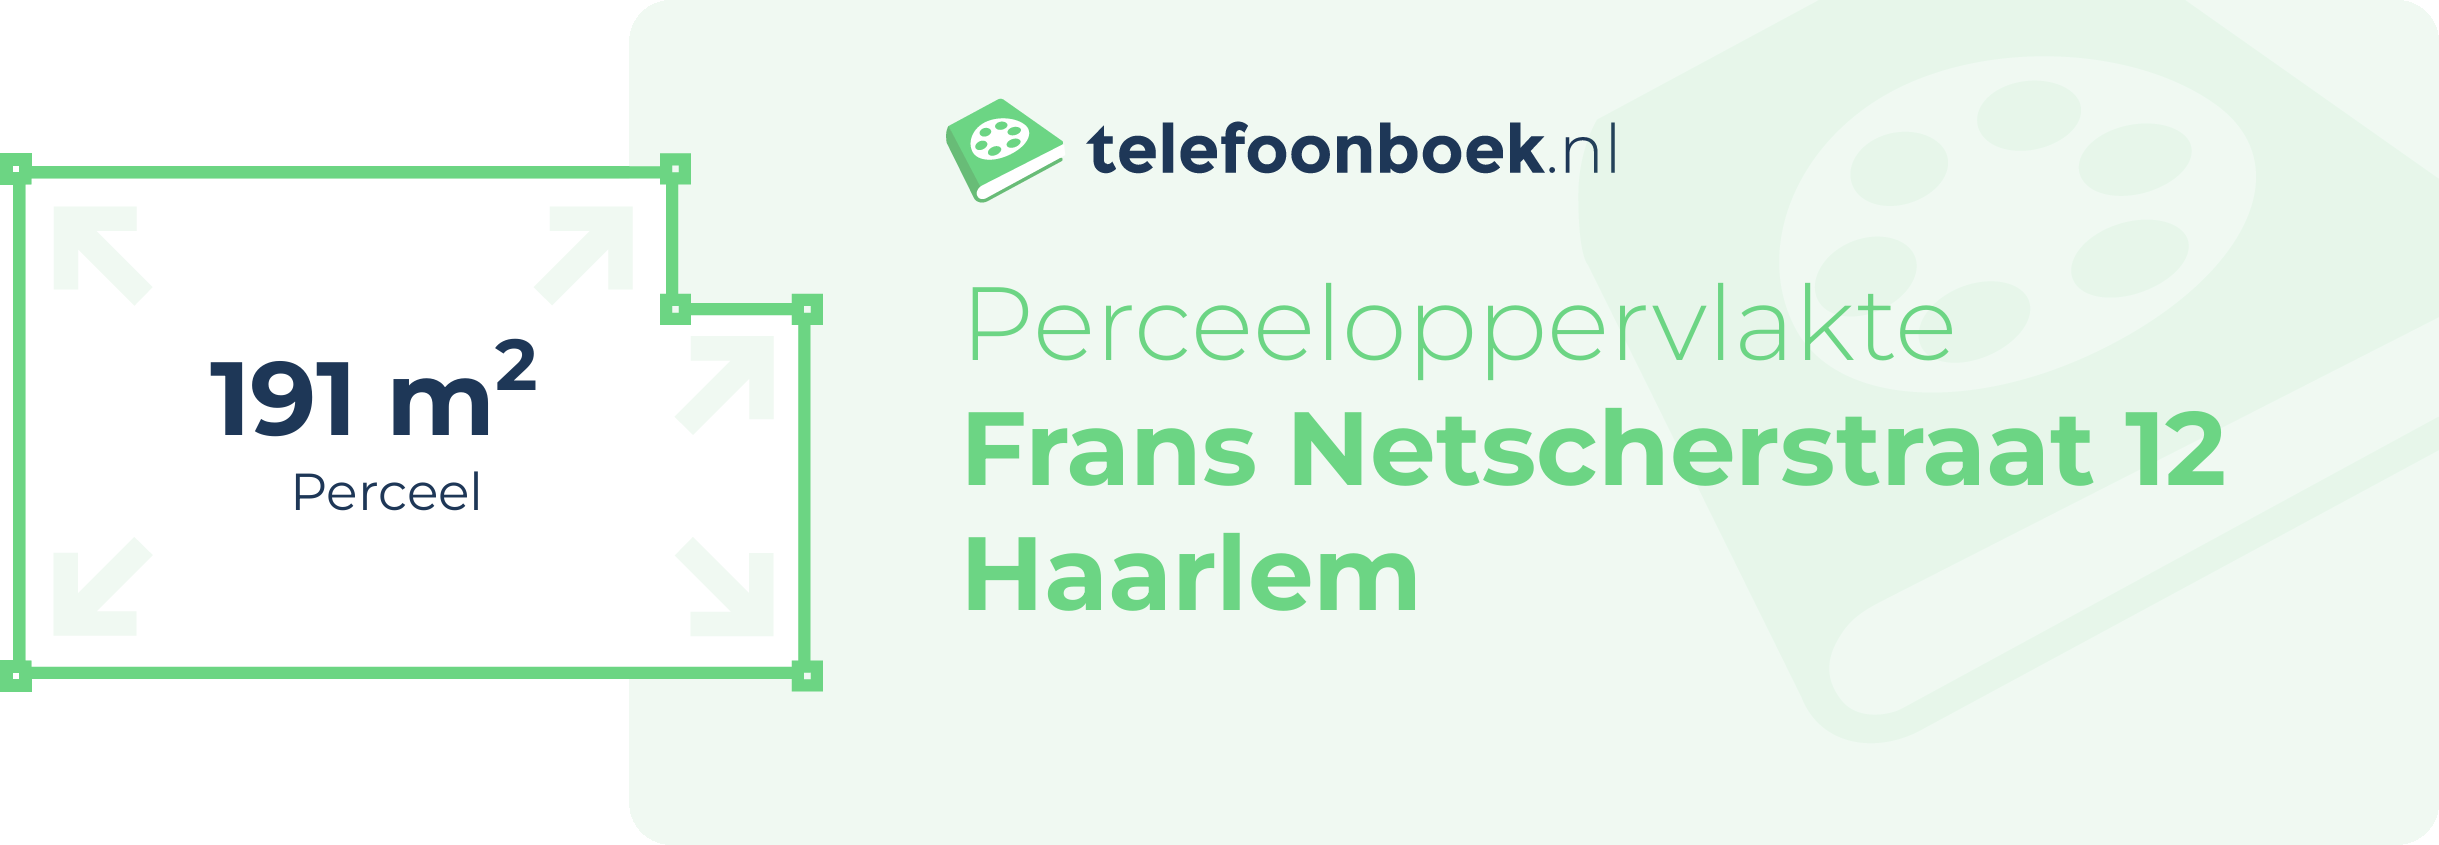 Perceeloppervlakte Frans Netscherstraat 12 Haarlem